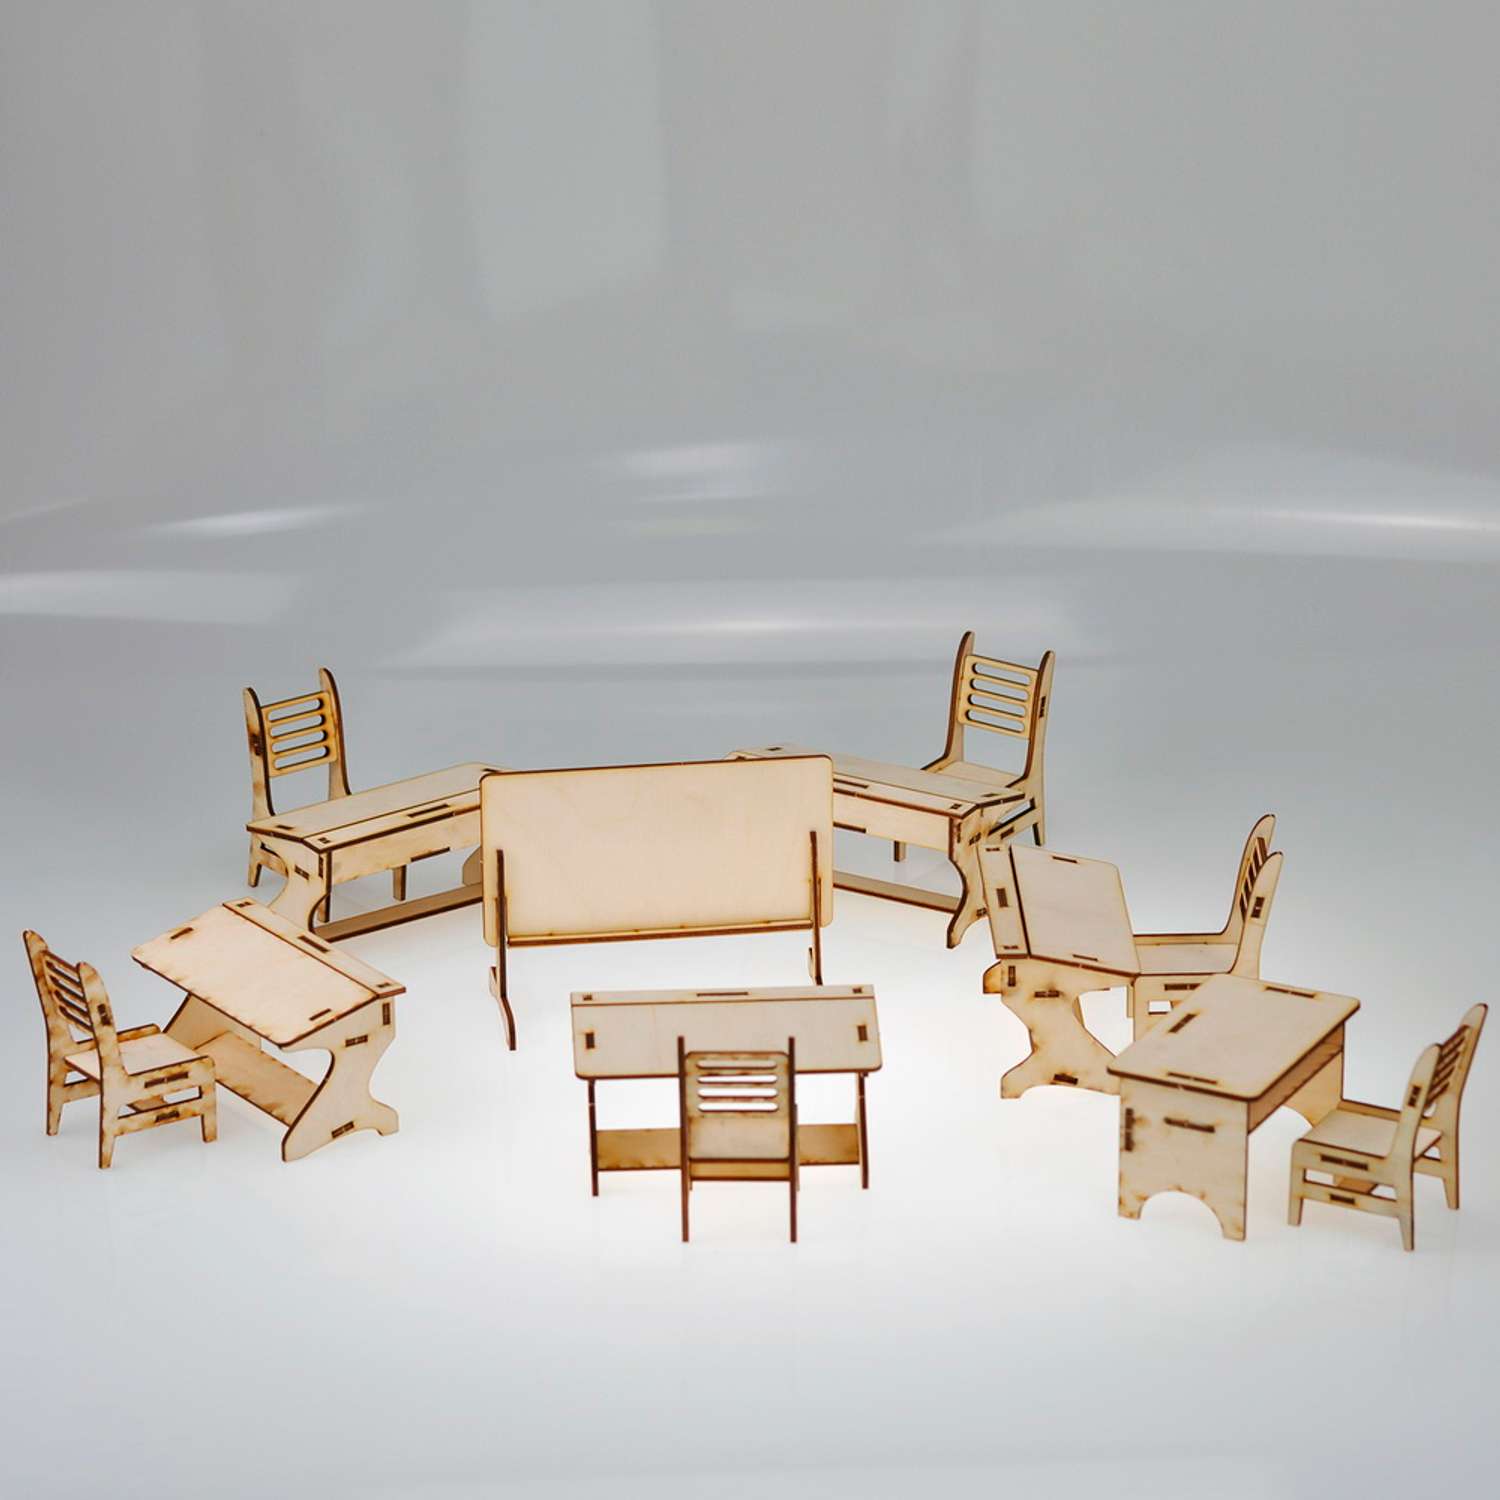 Игровой деревянный класс Amazwood 5 парт- учительский стол - доска - 6 стульев - 6 кукол AW1006 - фото 1